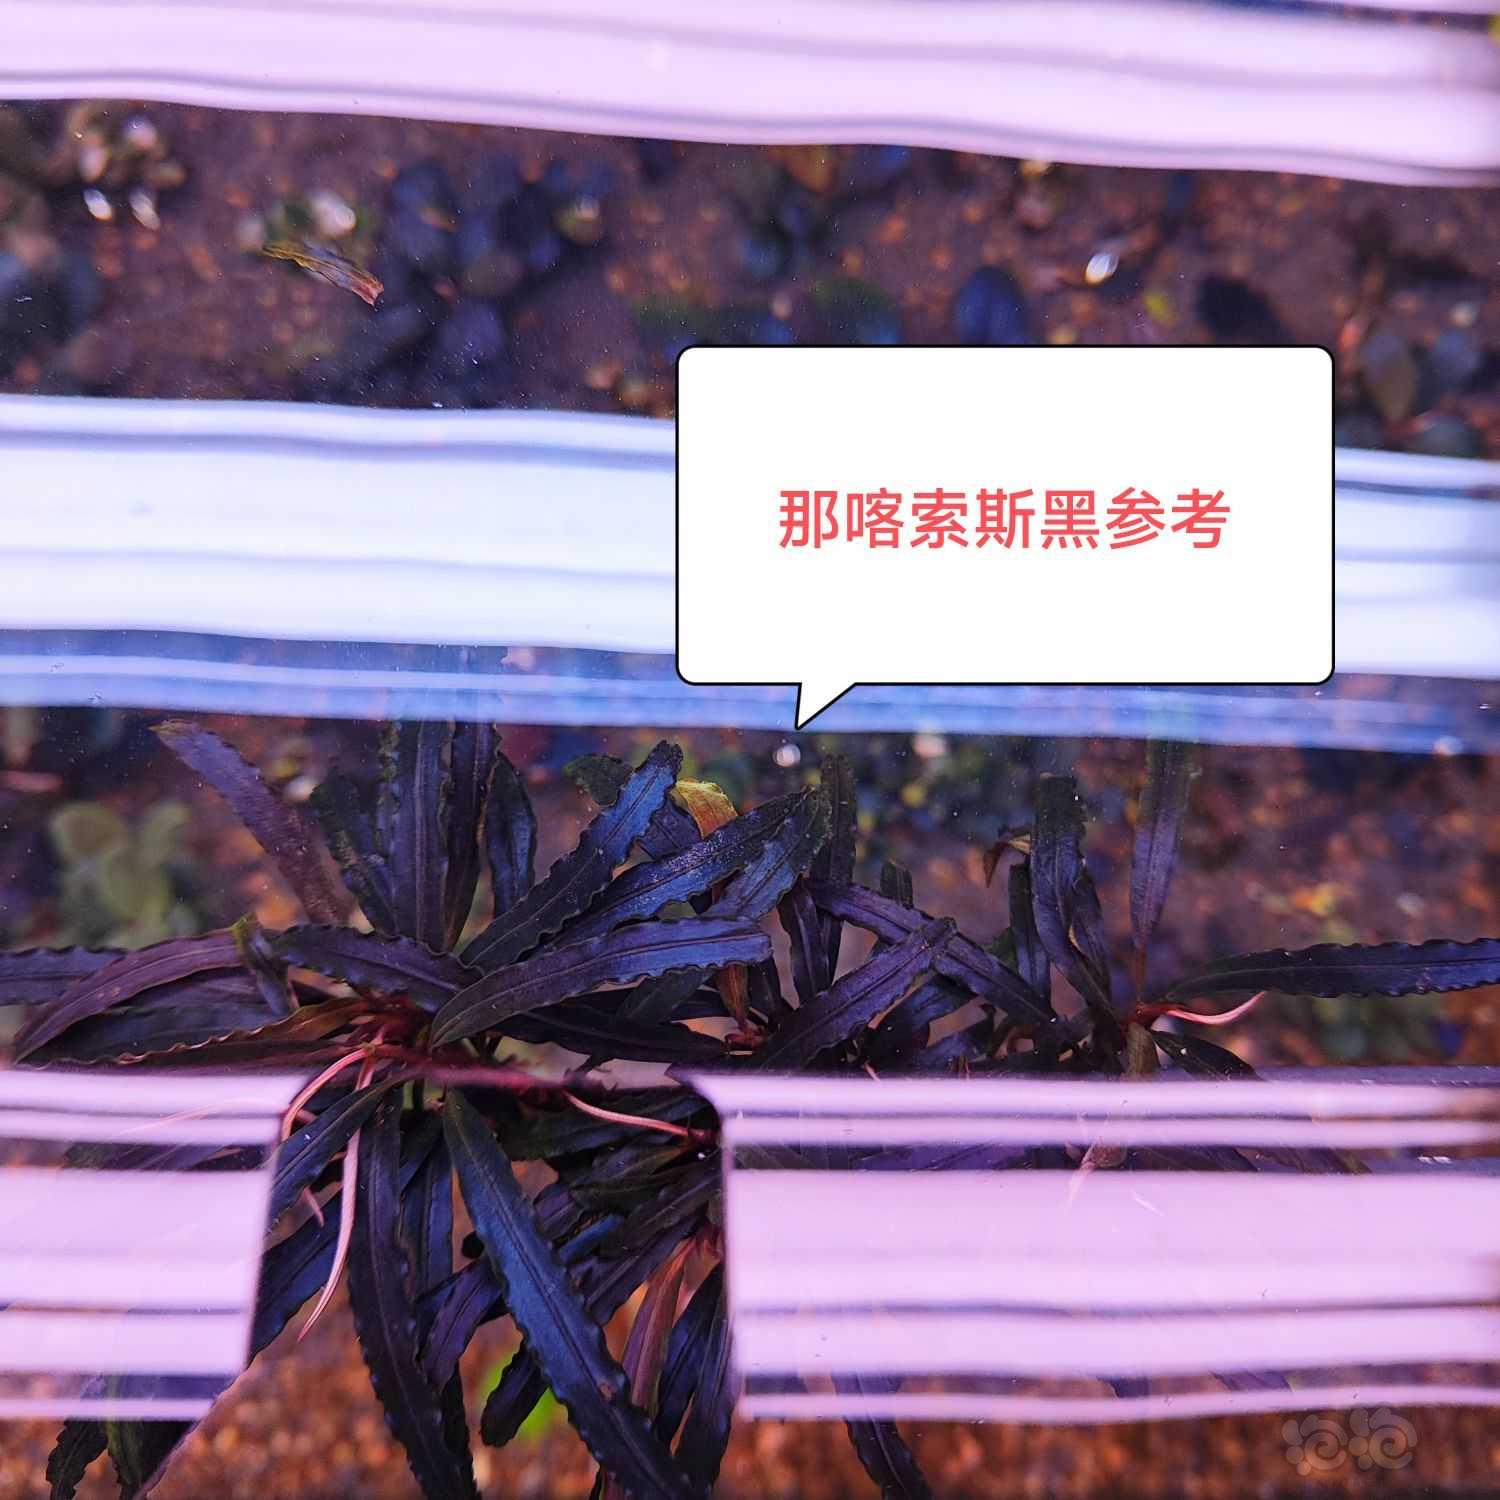 【辣椒榕】白马丸子红脉玉、那喀索斯黑、粉圆-图9